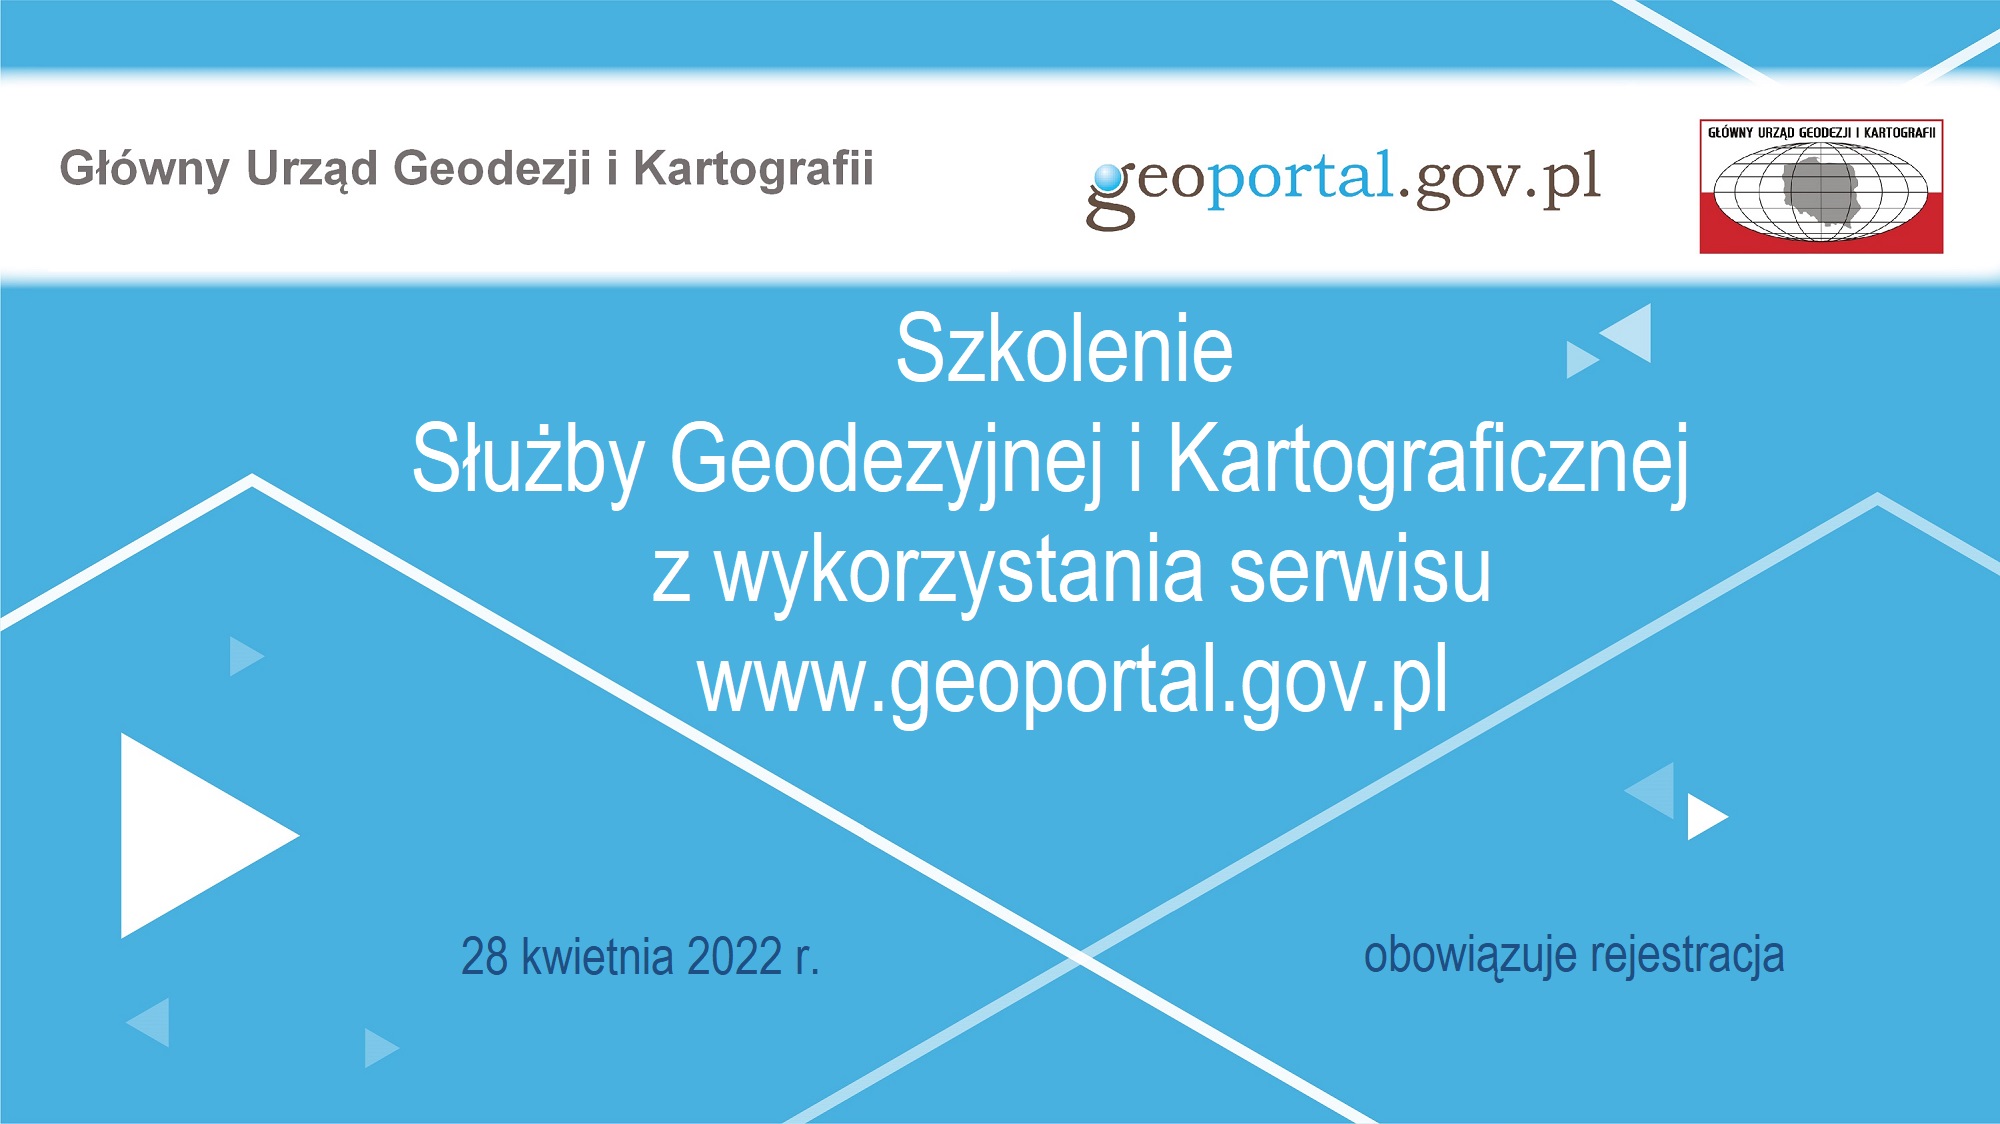 Ilustracja przedstawia baner graficzny z napisem „Szkolenie Służby Geodezyjnej i Kartograficznej z wykorzystania serwisu www.geoportal.gov.pl”, które odbędzie się 28 kwietnia 2022 r.